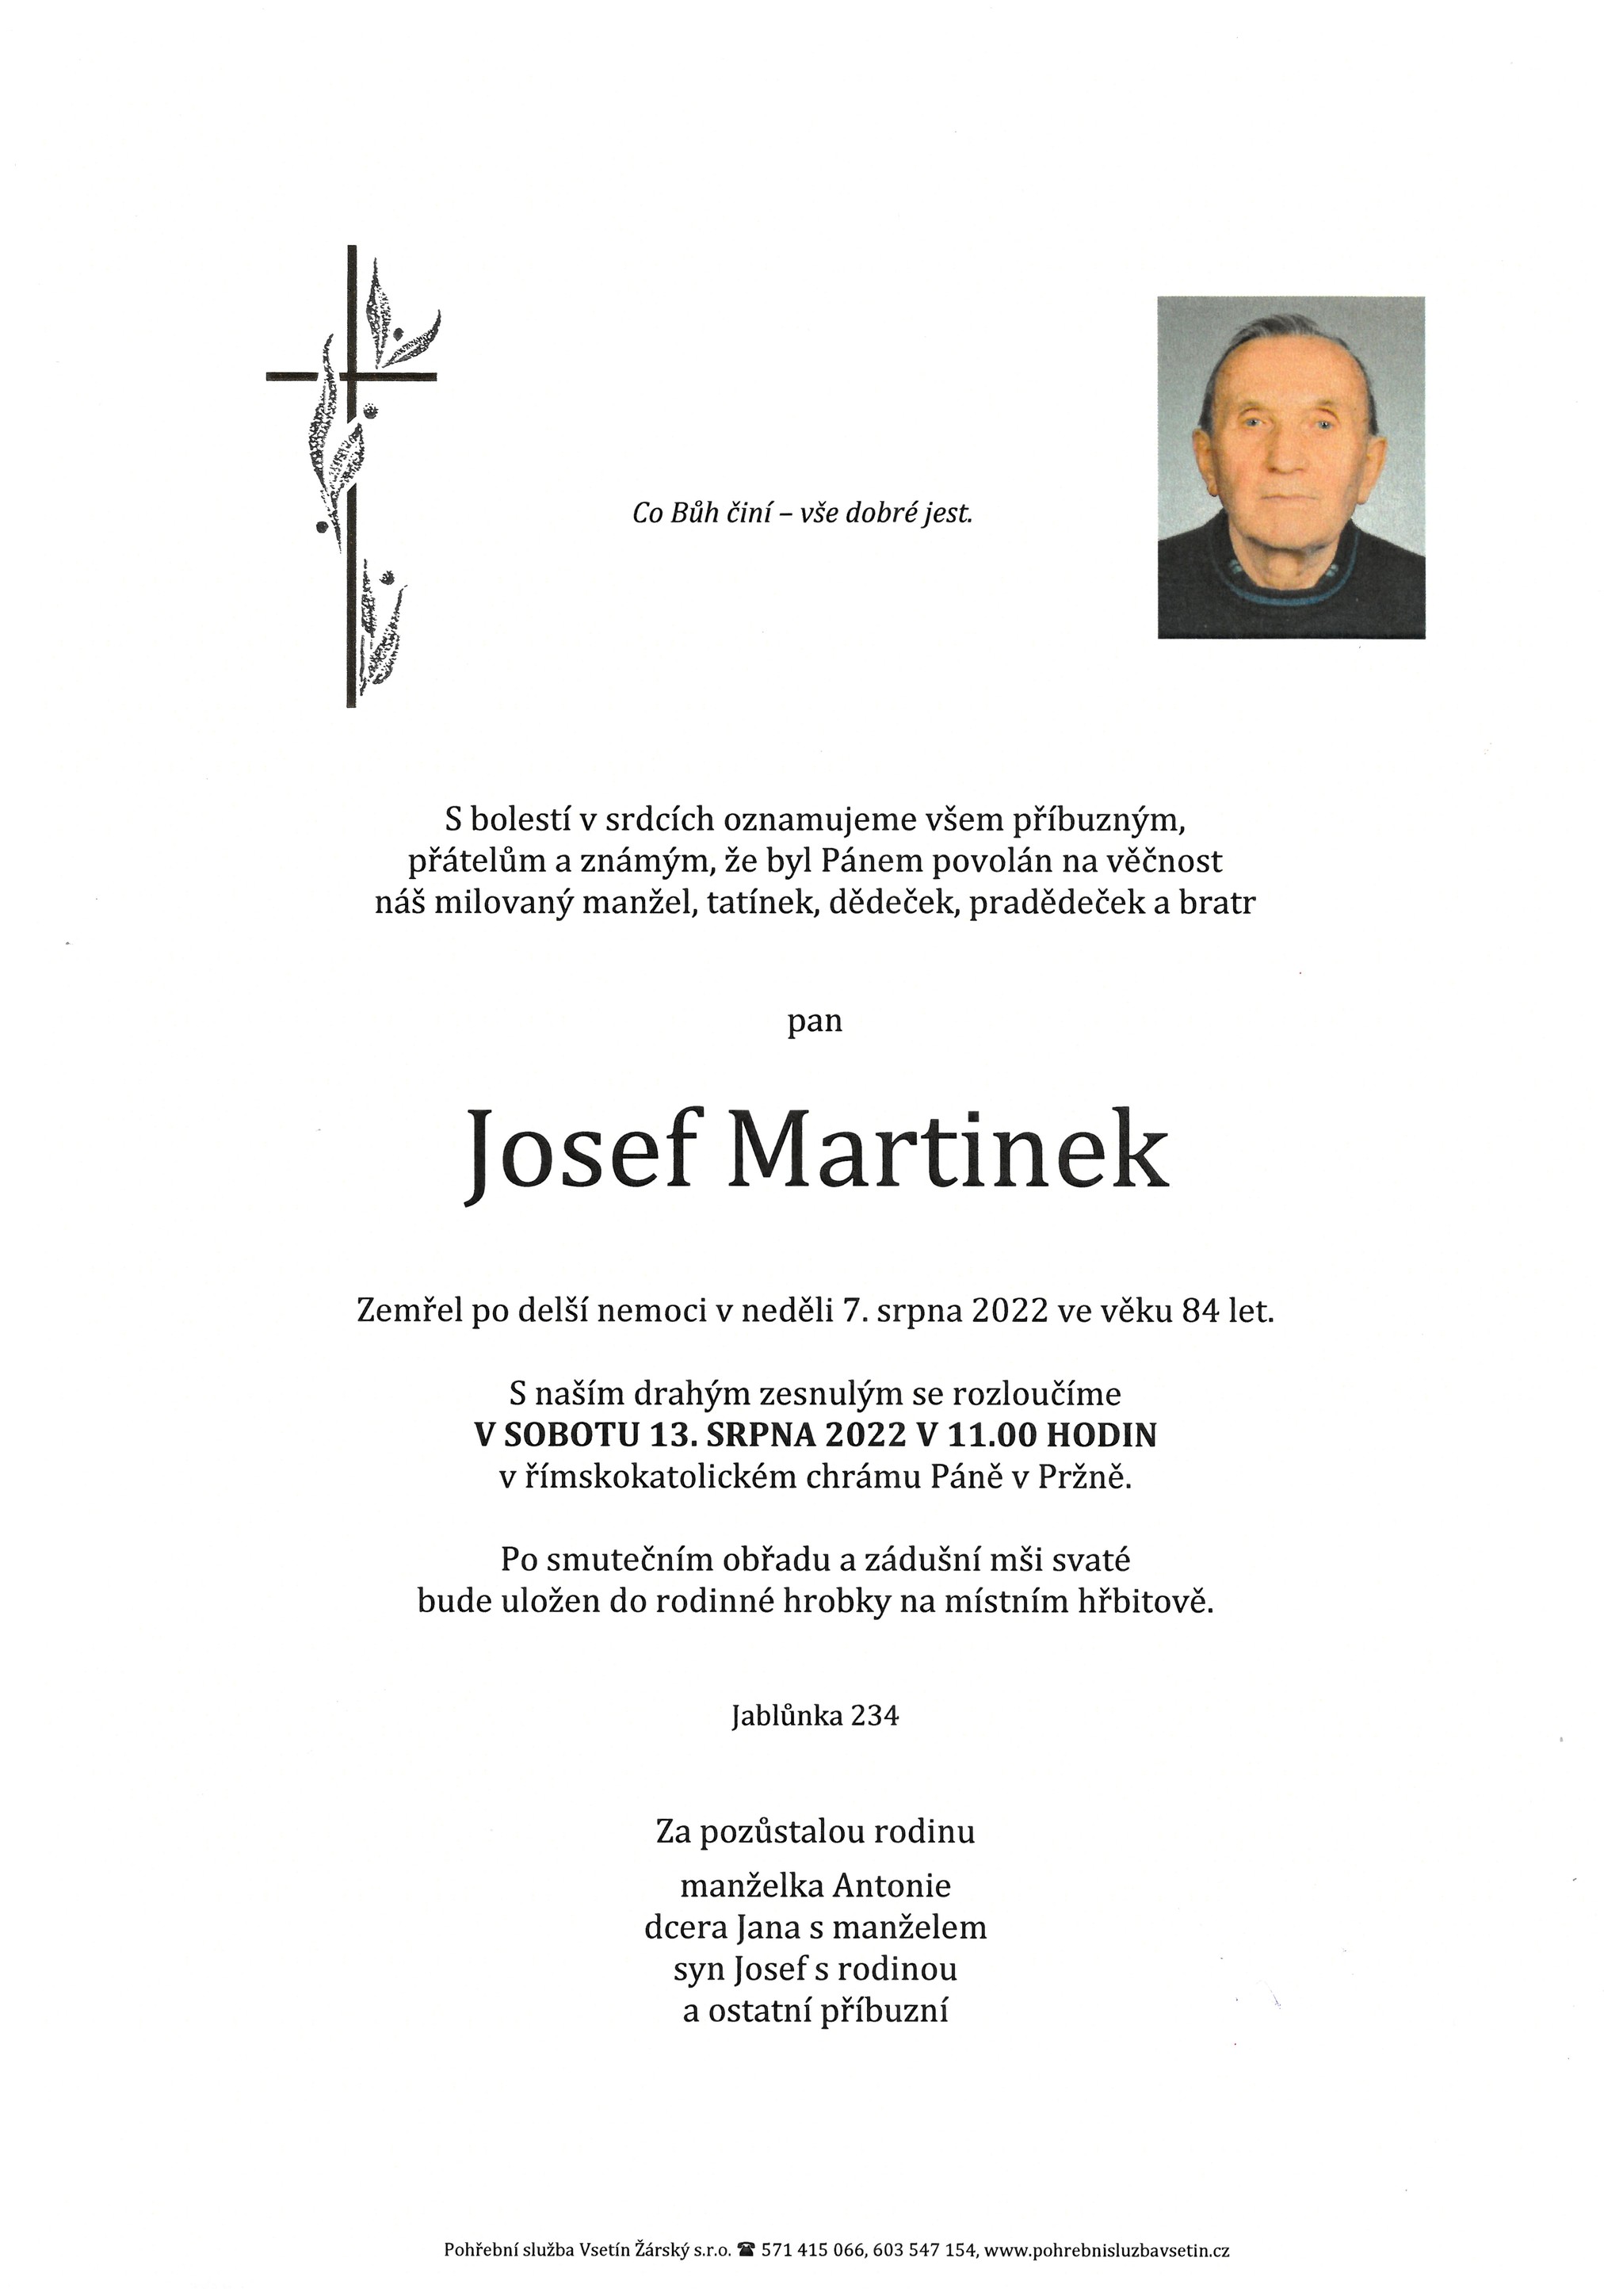 Josef Martinek